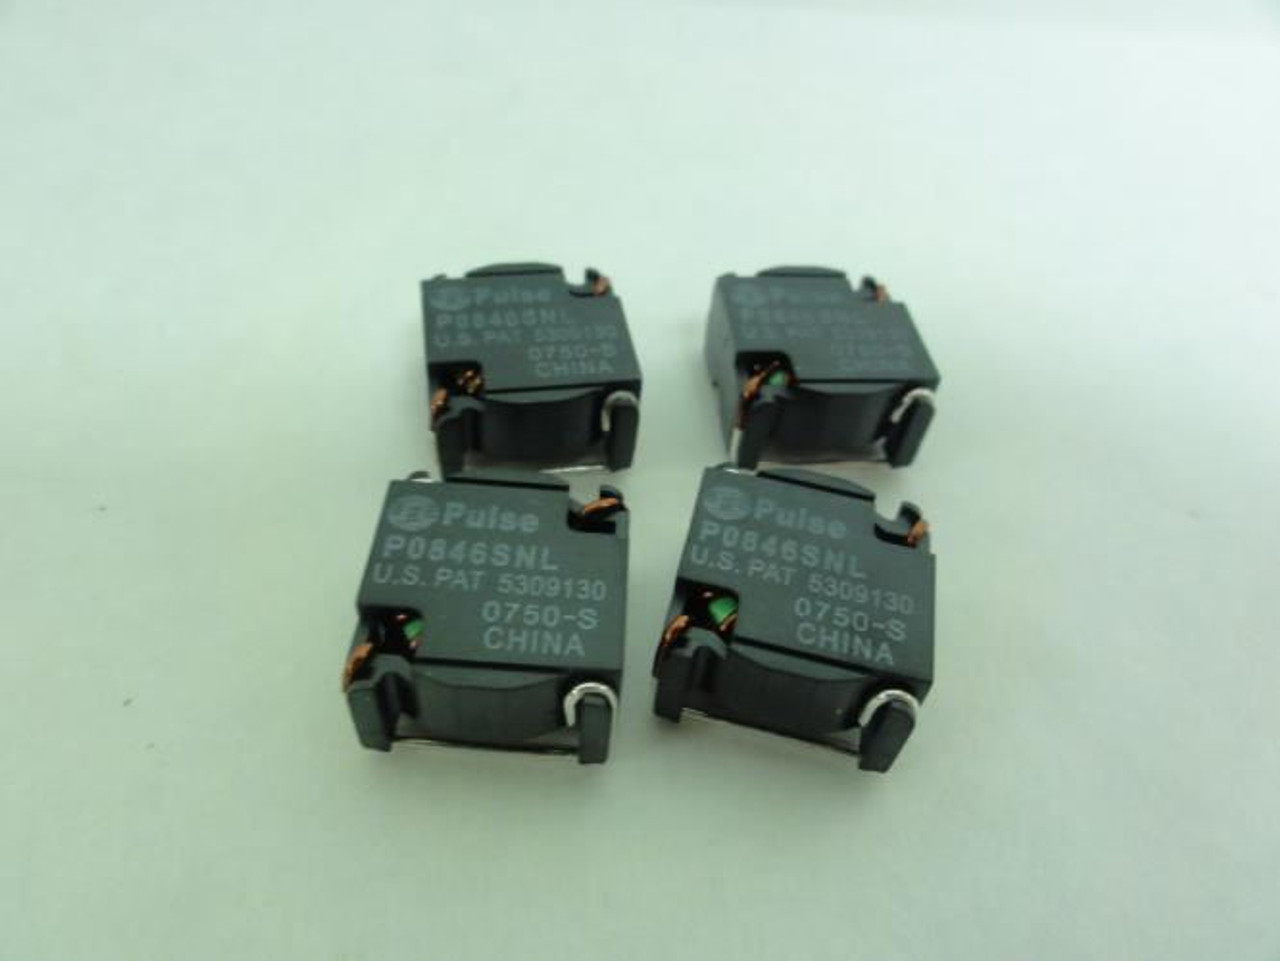 Pulse P0846SNL; Lot-4 Fixed Inductors; 5A